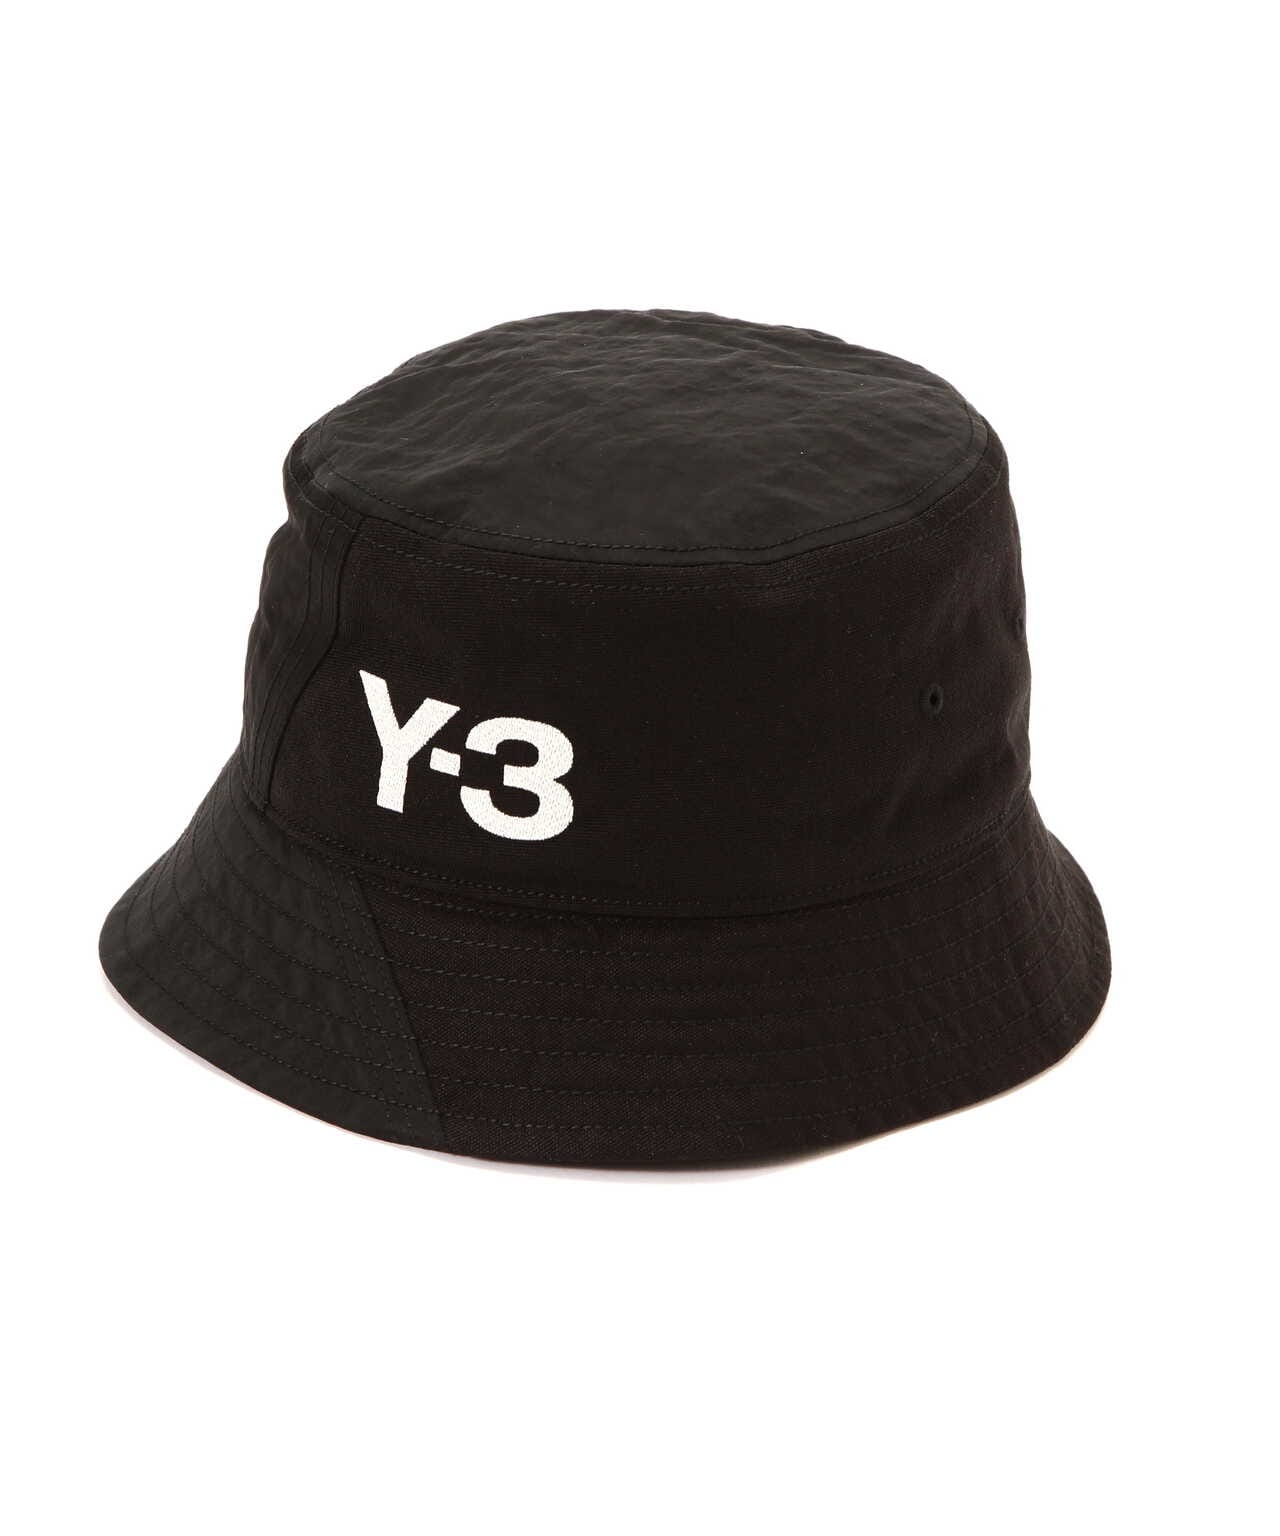 確実正規品ですY-3 帽子 バケットハット ブラック 黒 ワイスリー 男女兼用